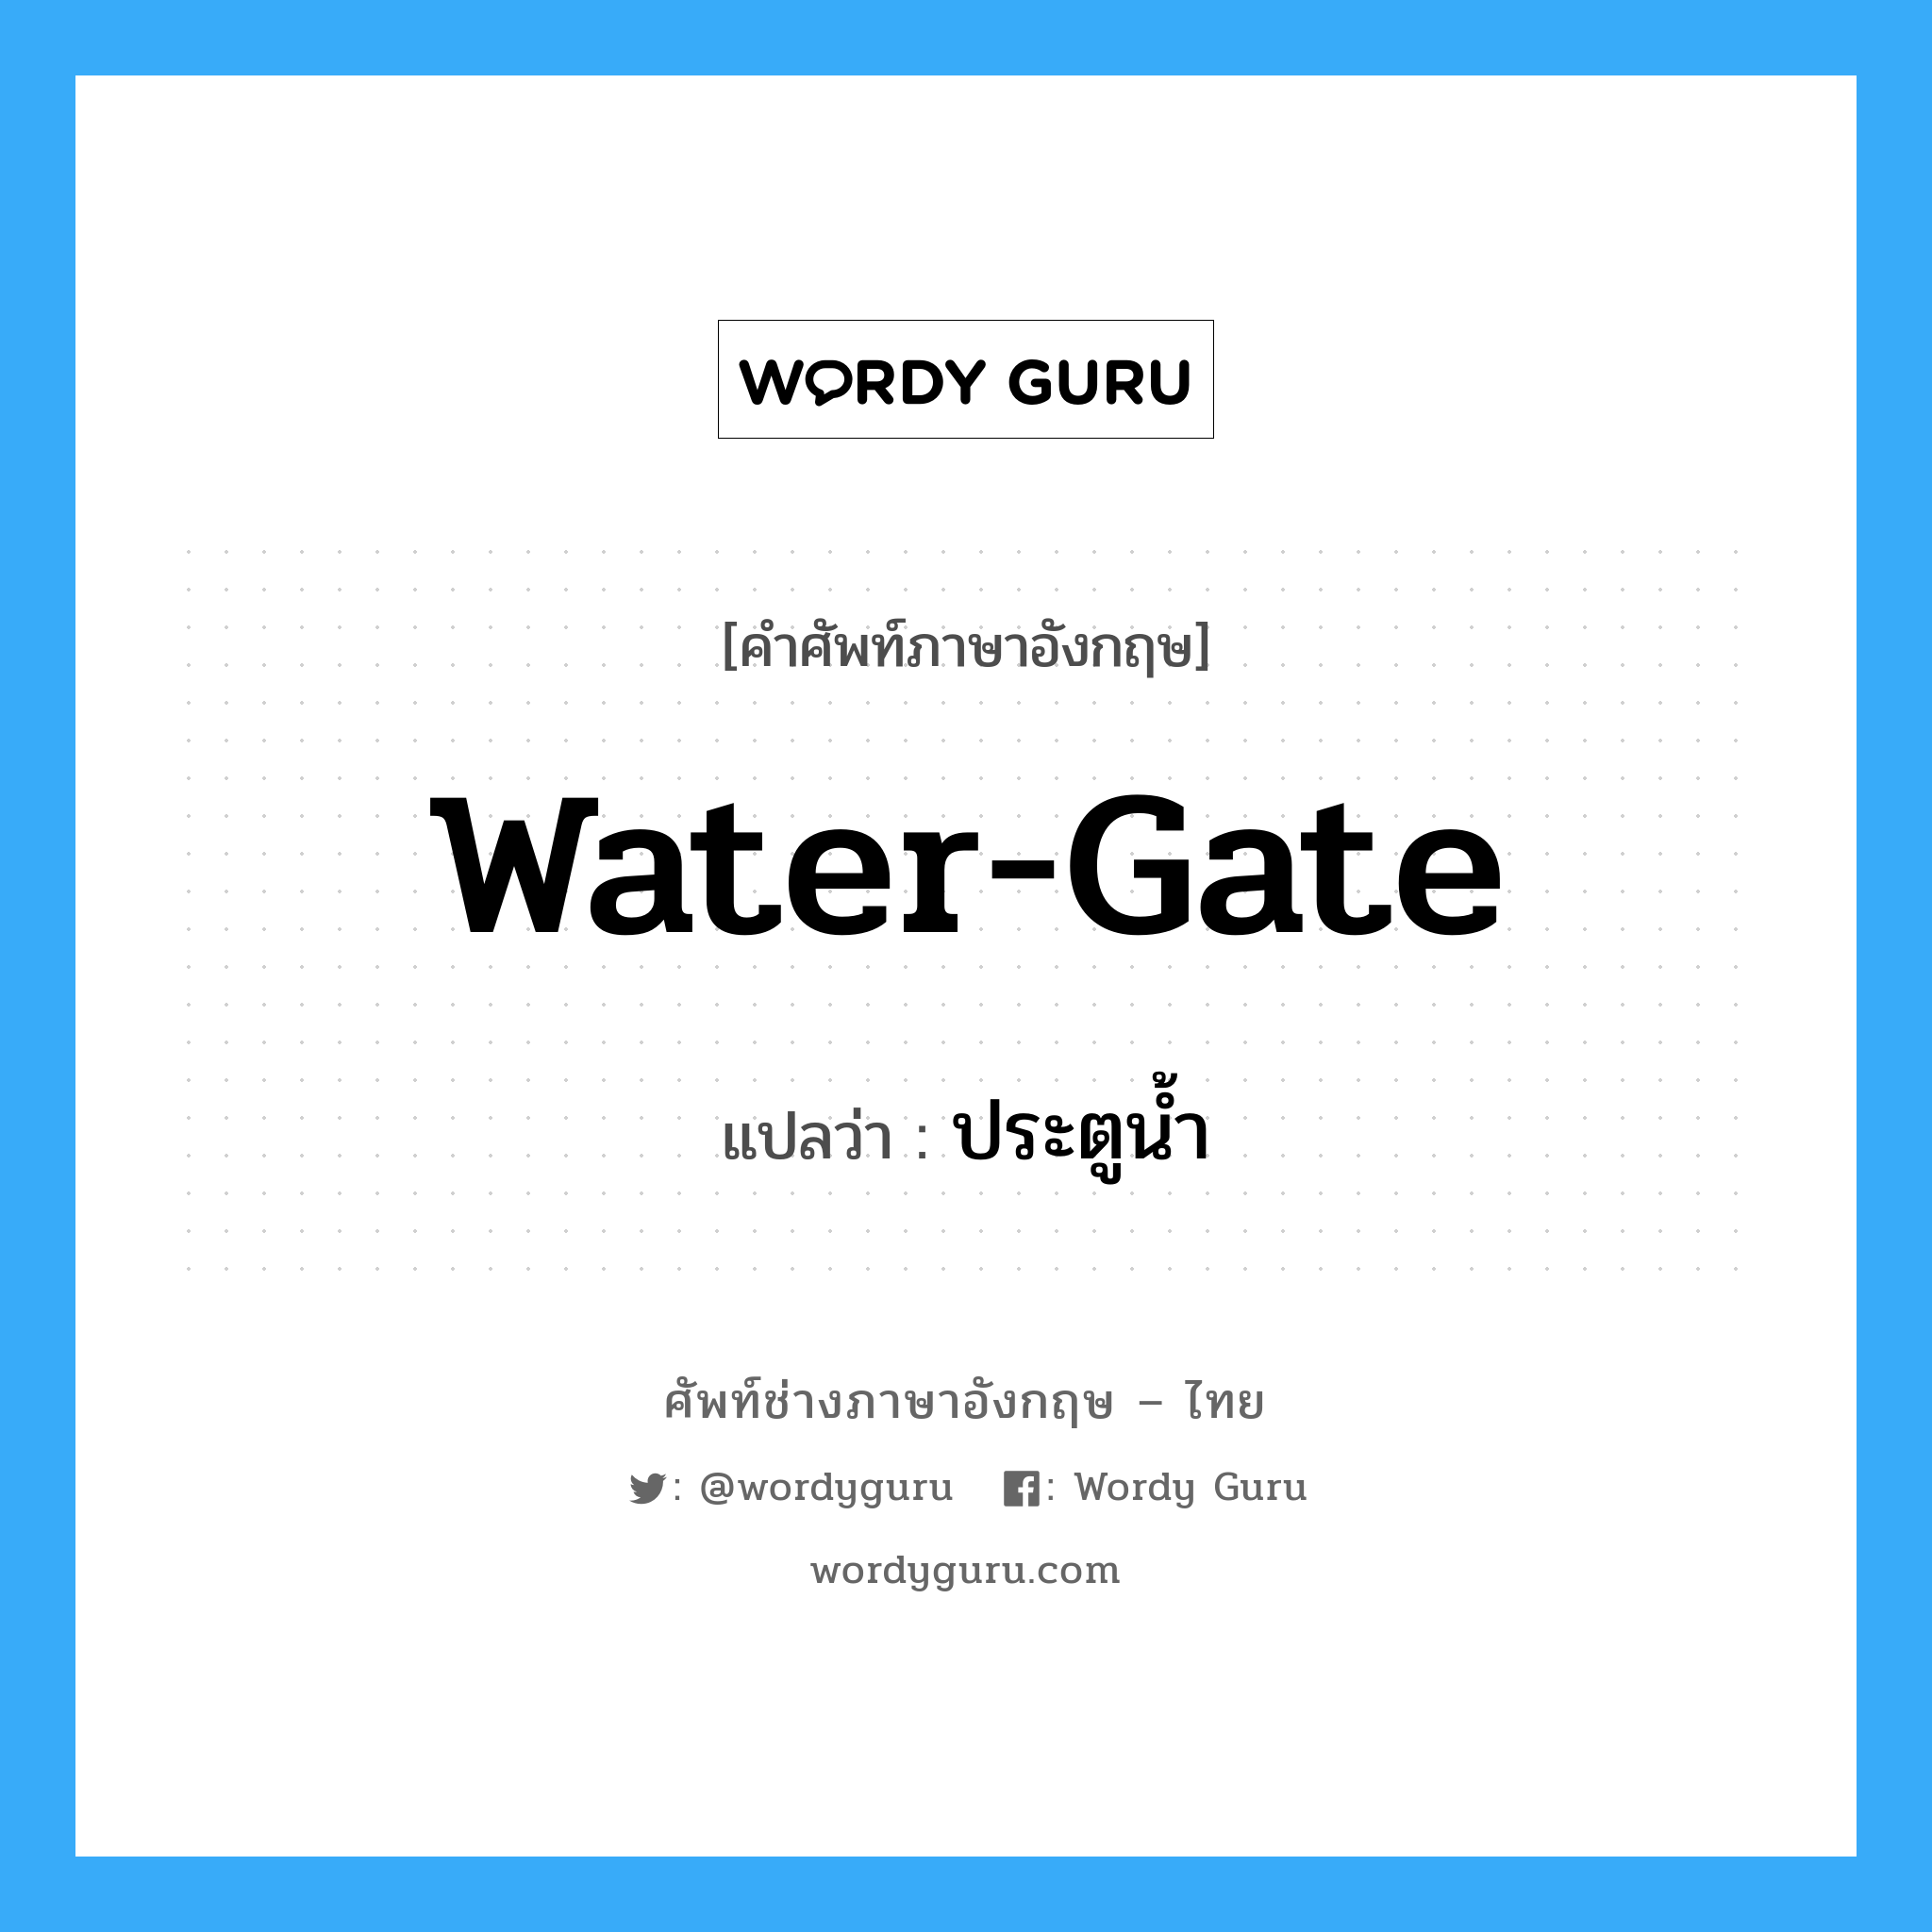 water-gate แปลว่า?, คำศัพท์ช่างภาษาอังกฤษ - ไทย water-gate คำศัพท์ภาษาอังกฤษ water-gate แปลว่า ประตูน้ำ